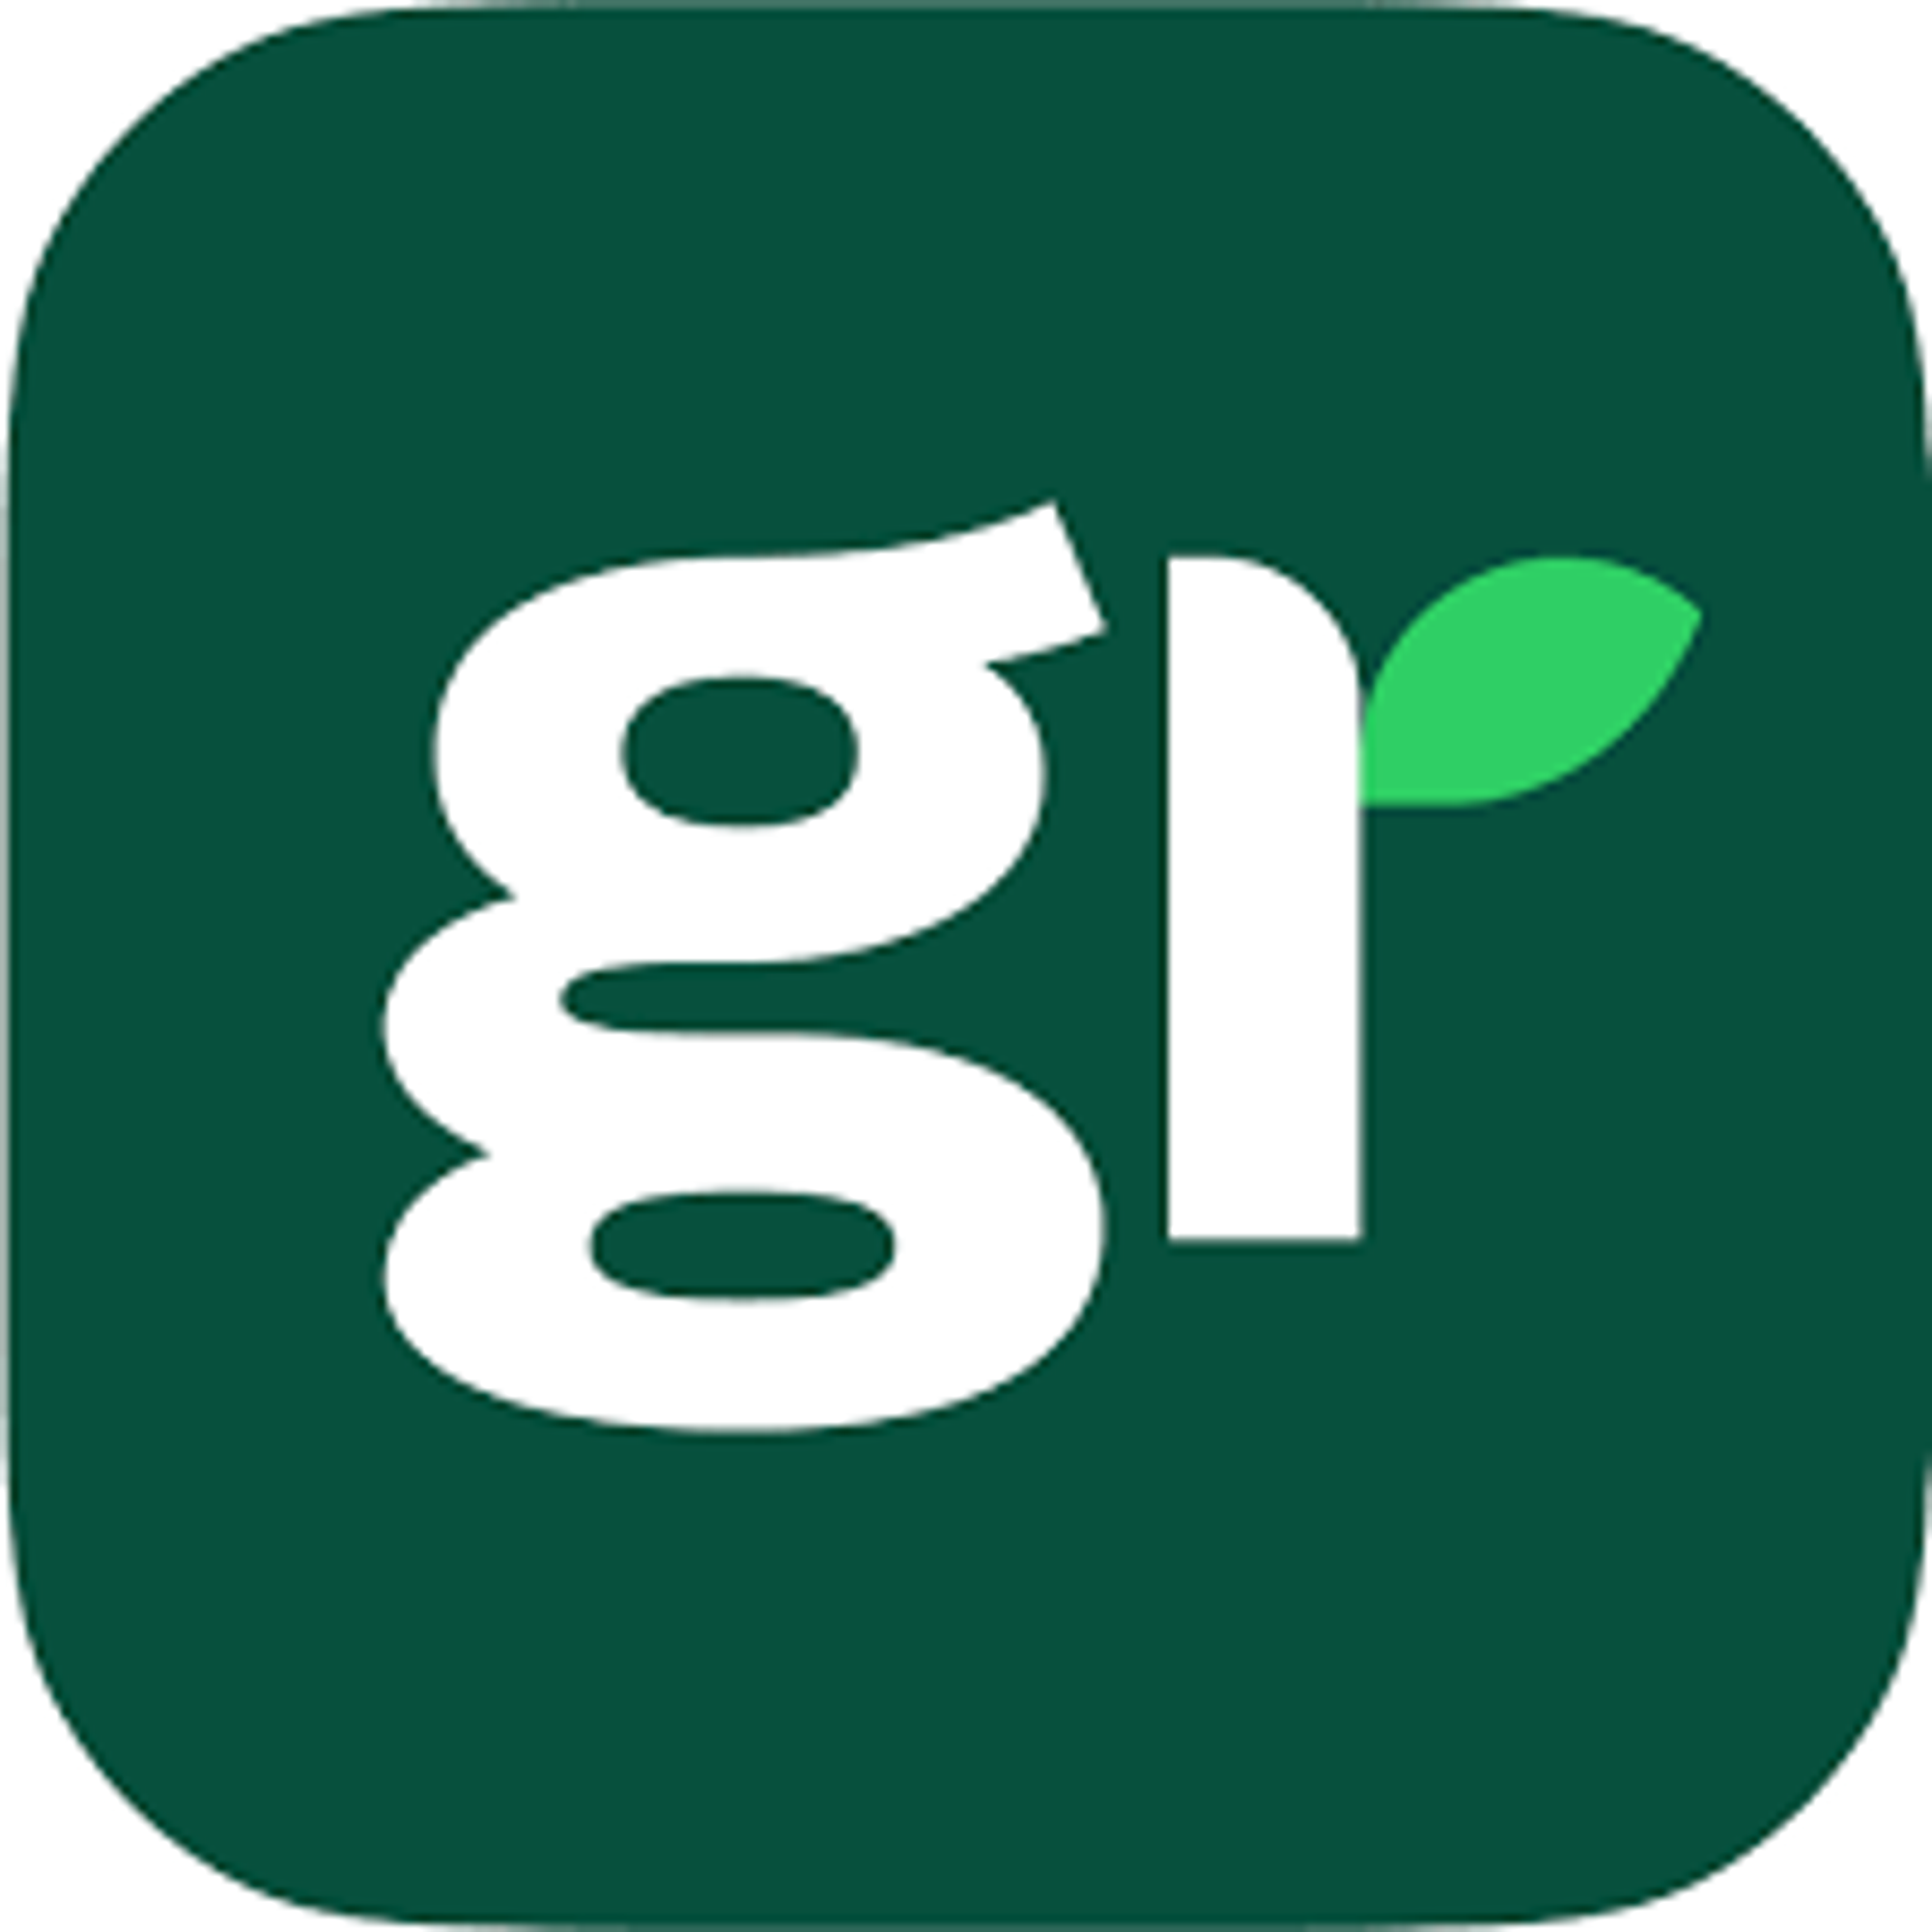 Greenly est la première entreprise certifiée B Corp à proposer le Détecteur CO₂ à ses lecteurs sur tous les articles de son blog. 